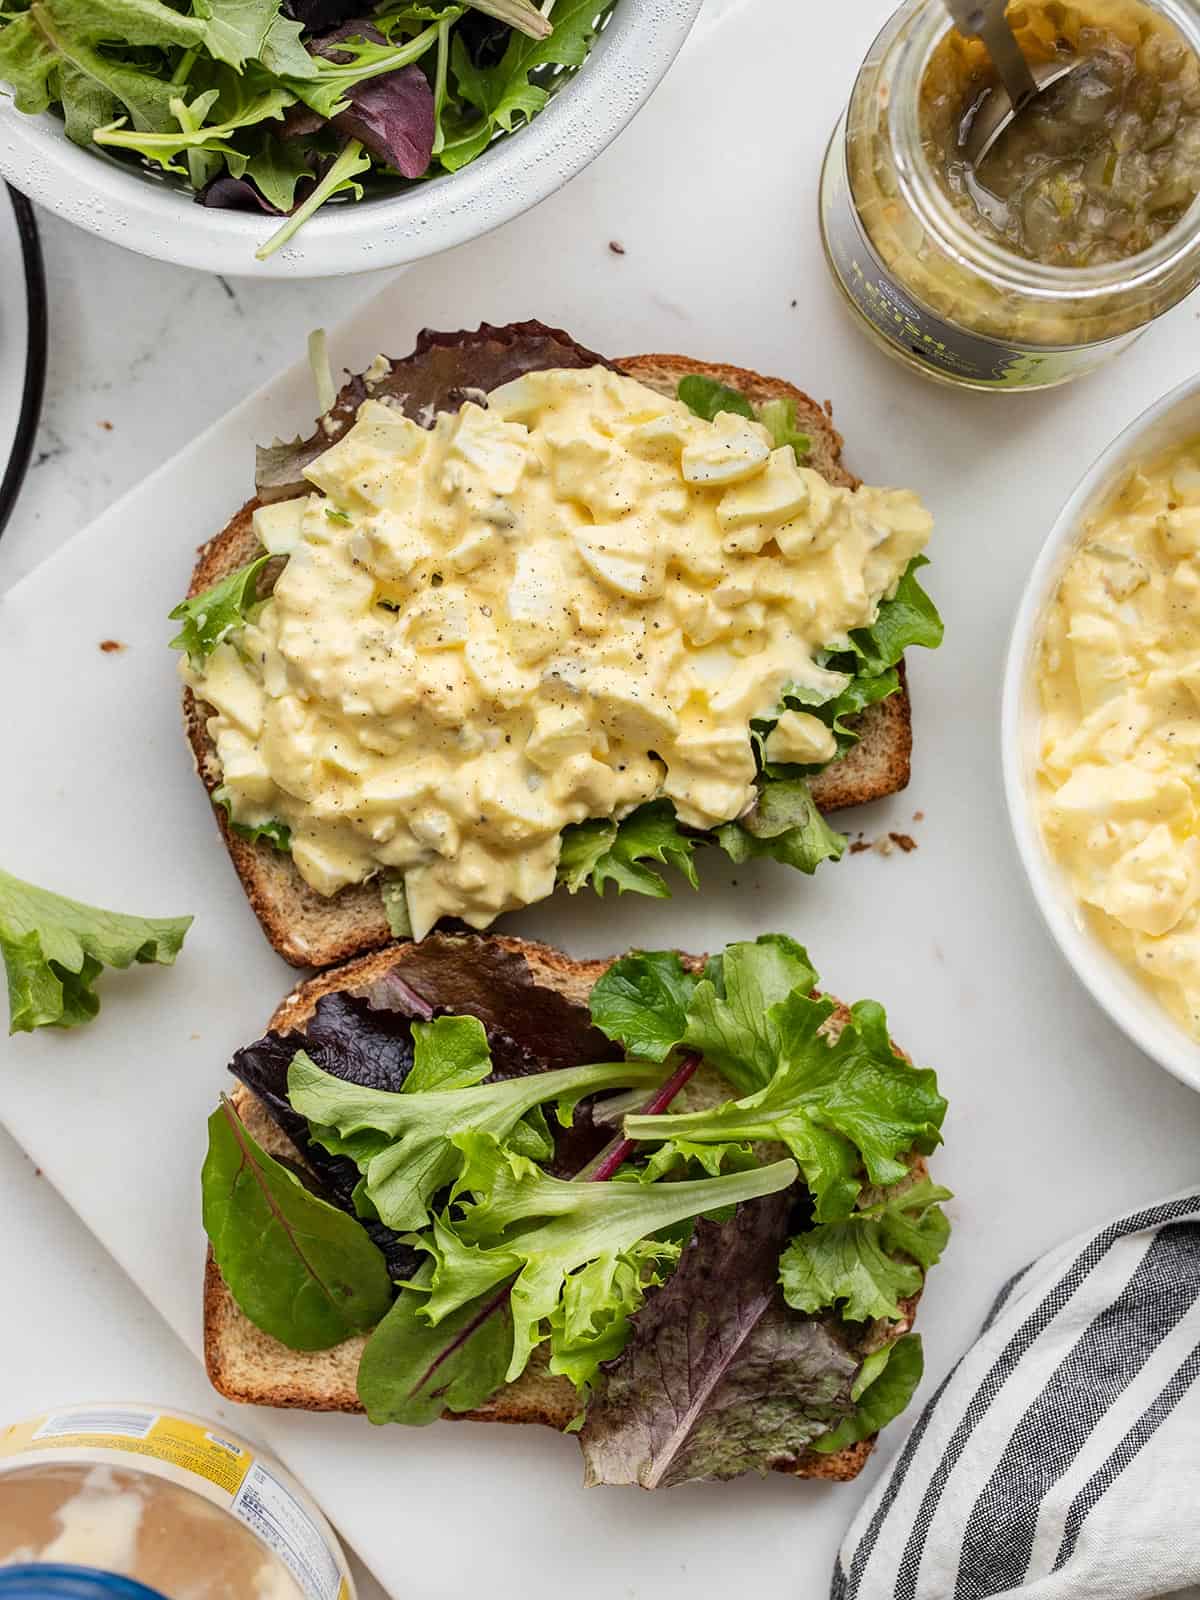 https://www.budgetbytes.com/wp-content/uploads/2022/02/Easy-Egg-Salad-V2.jpg